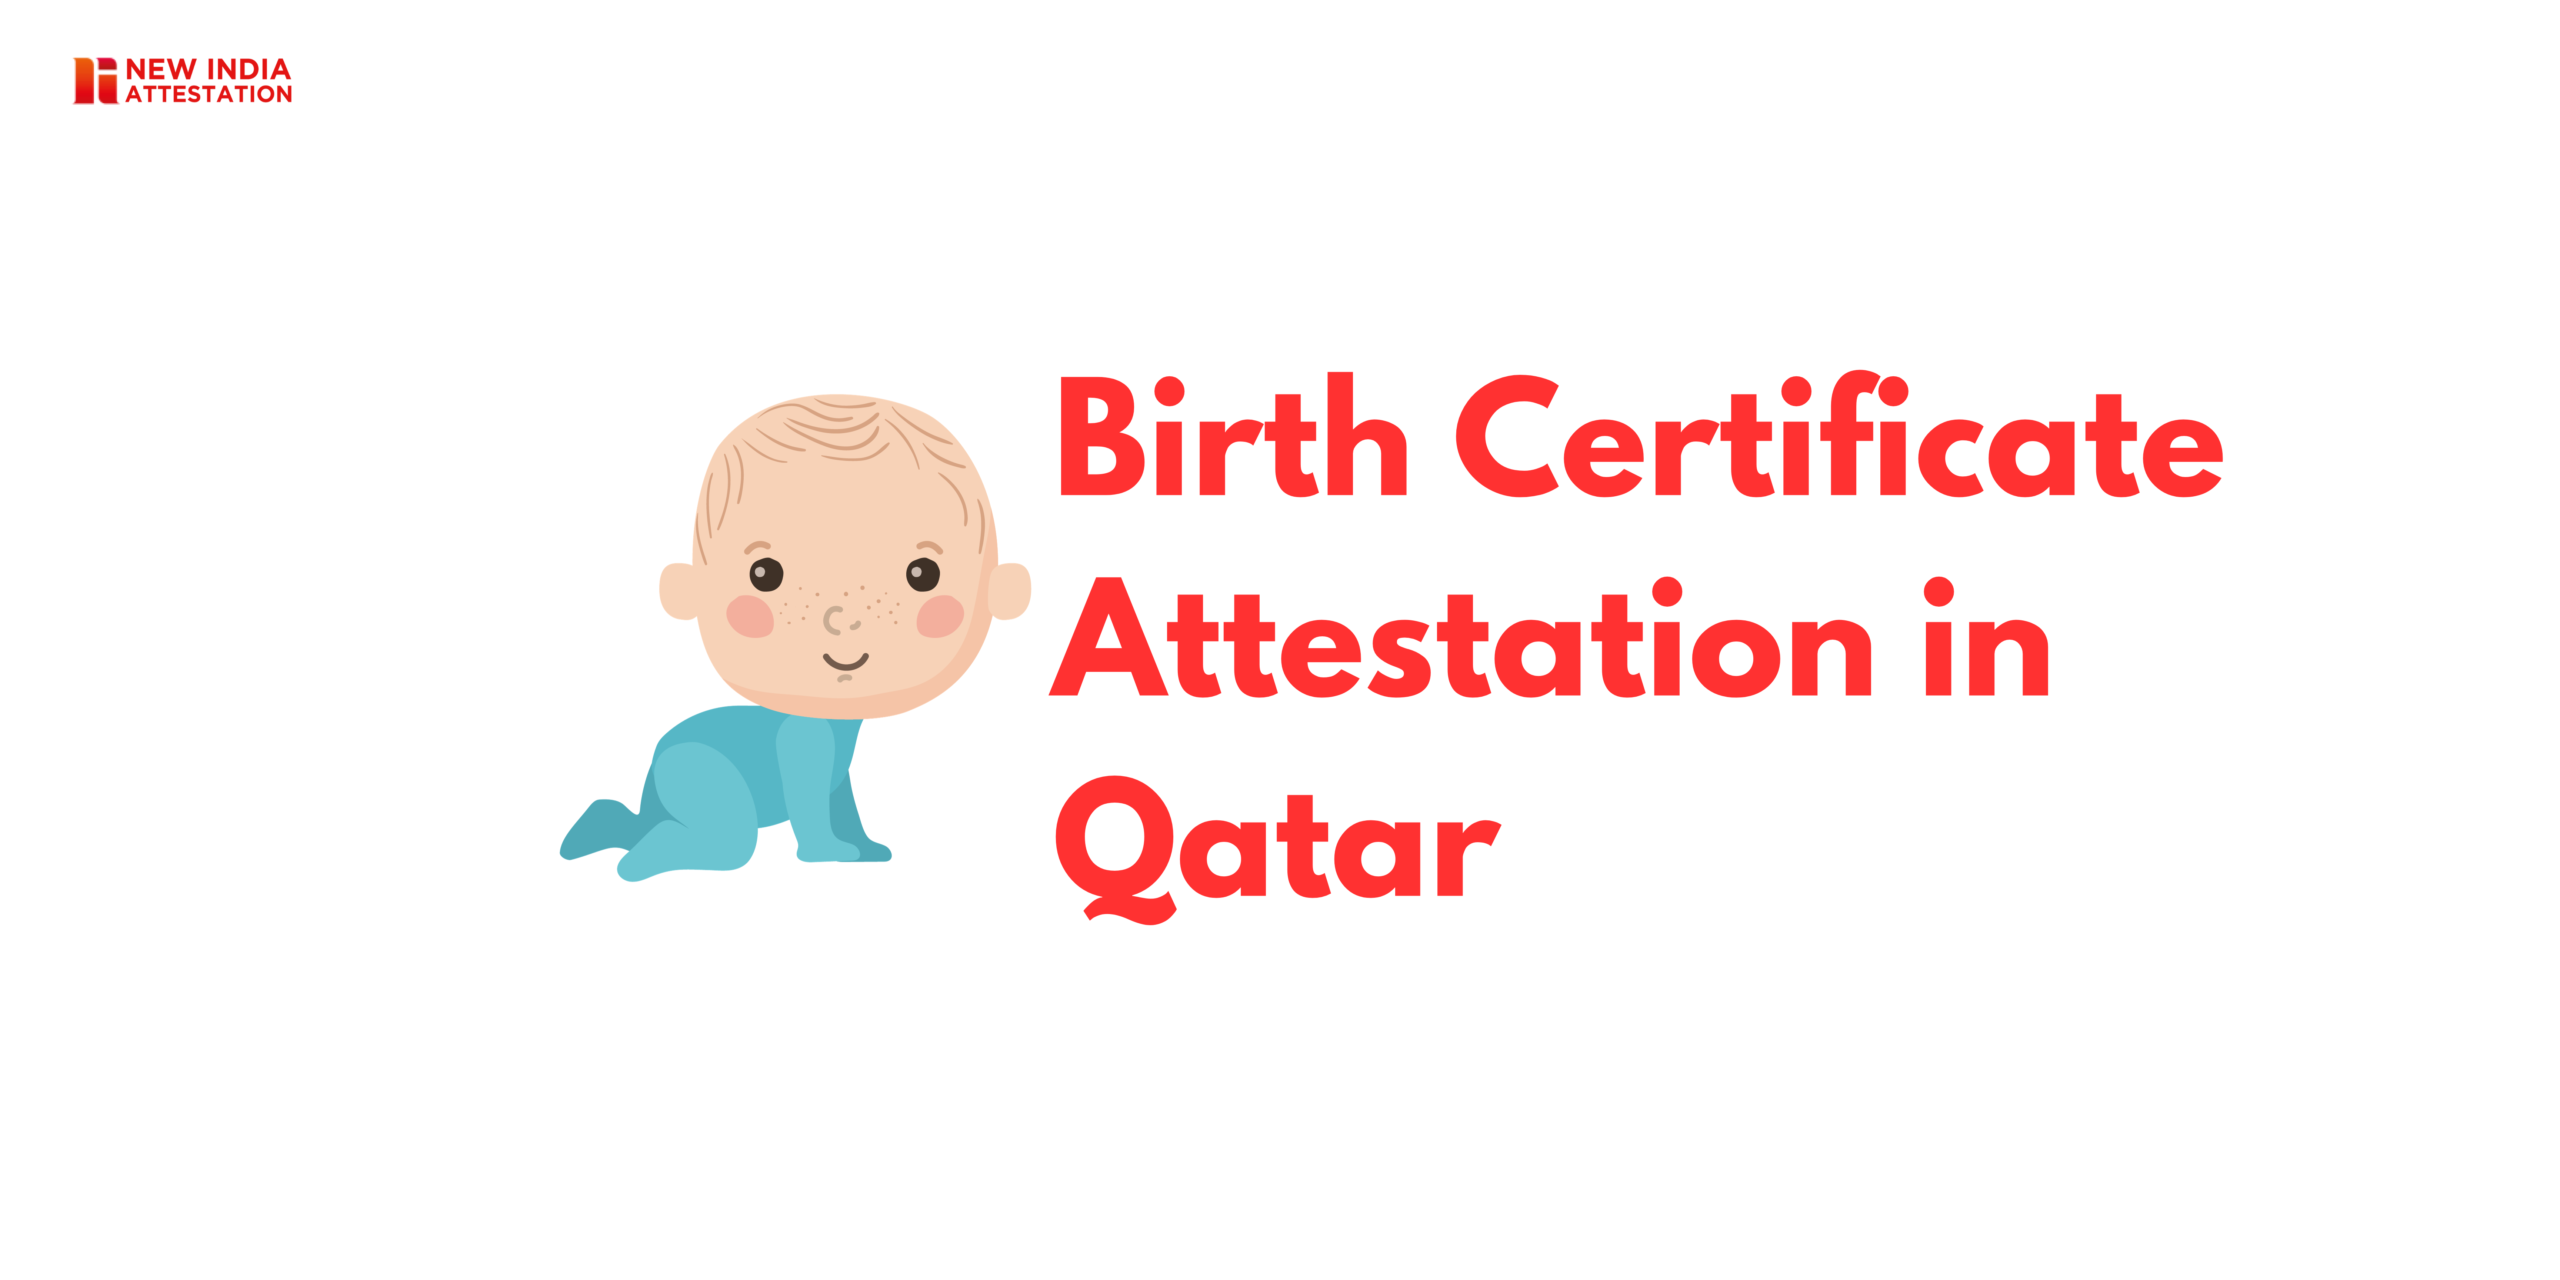 Birth Certificate Attesttation in Qatar